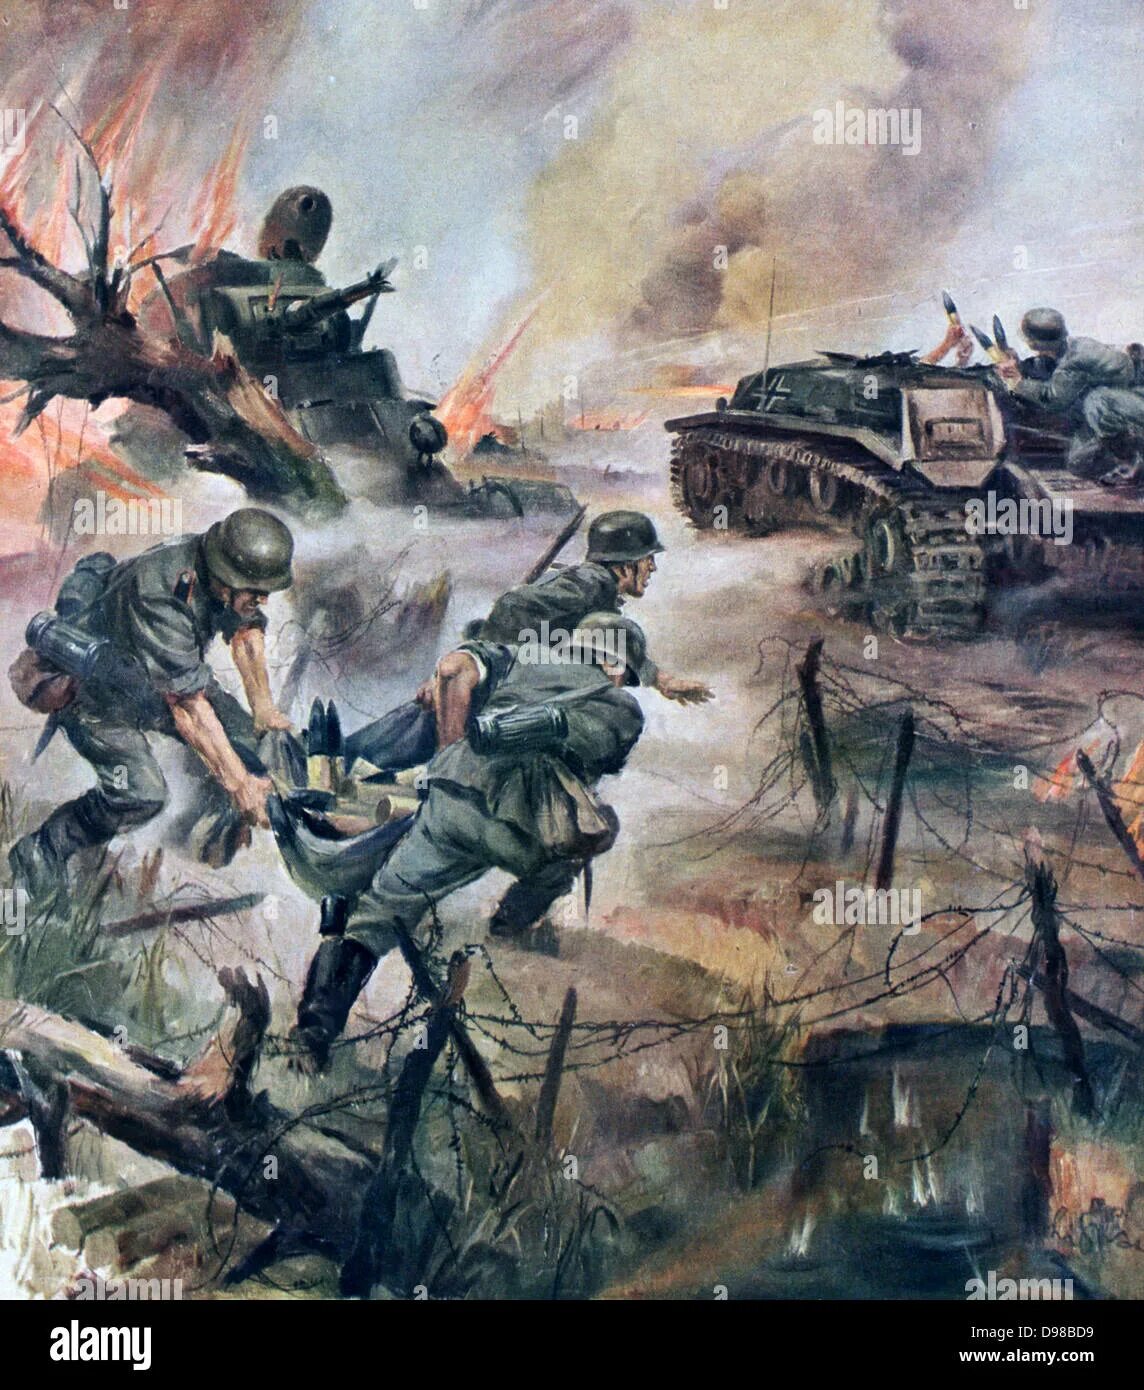 Военные картины великой отечественной войны. Ханс лиска военные картины. Современные картины о войне. Рисунок про войну.